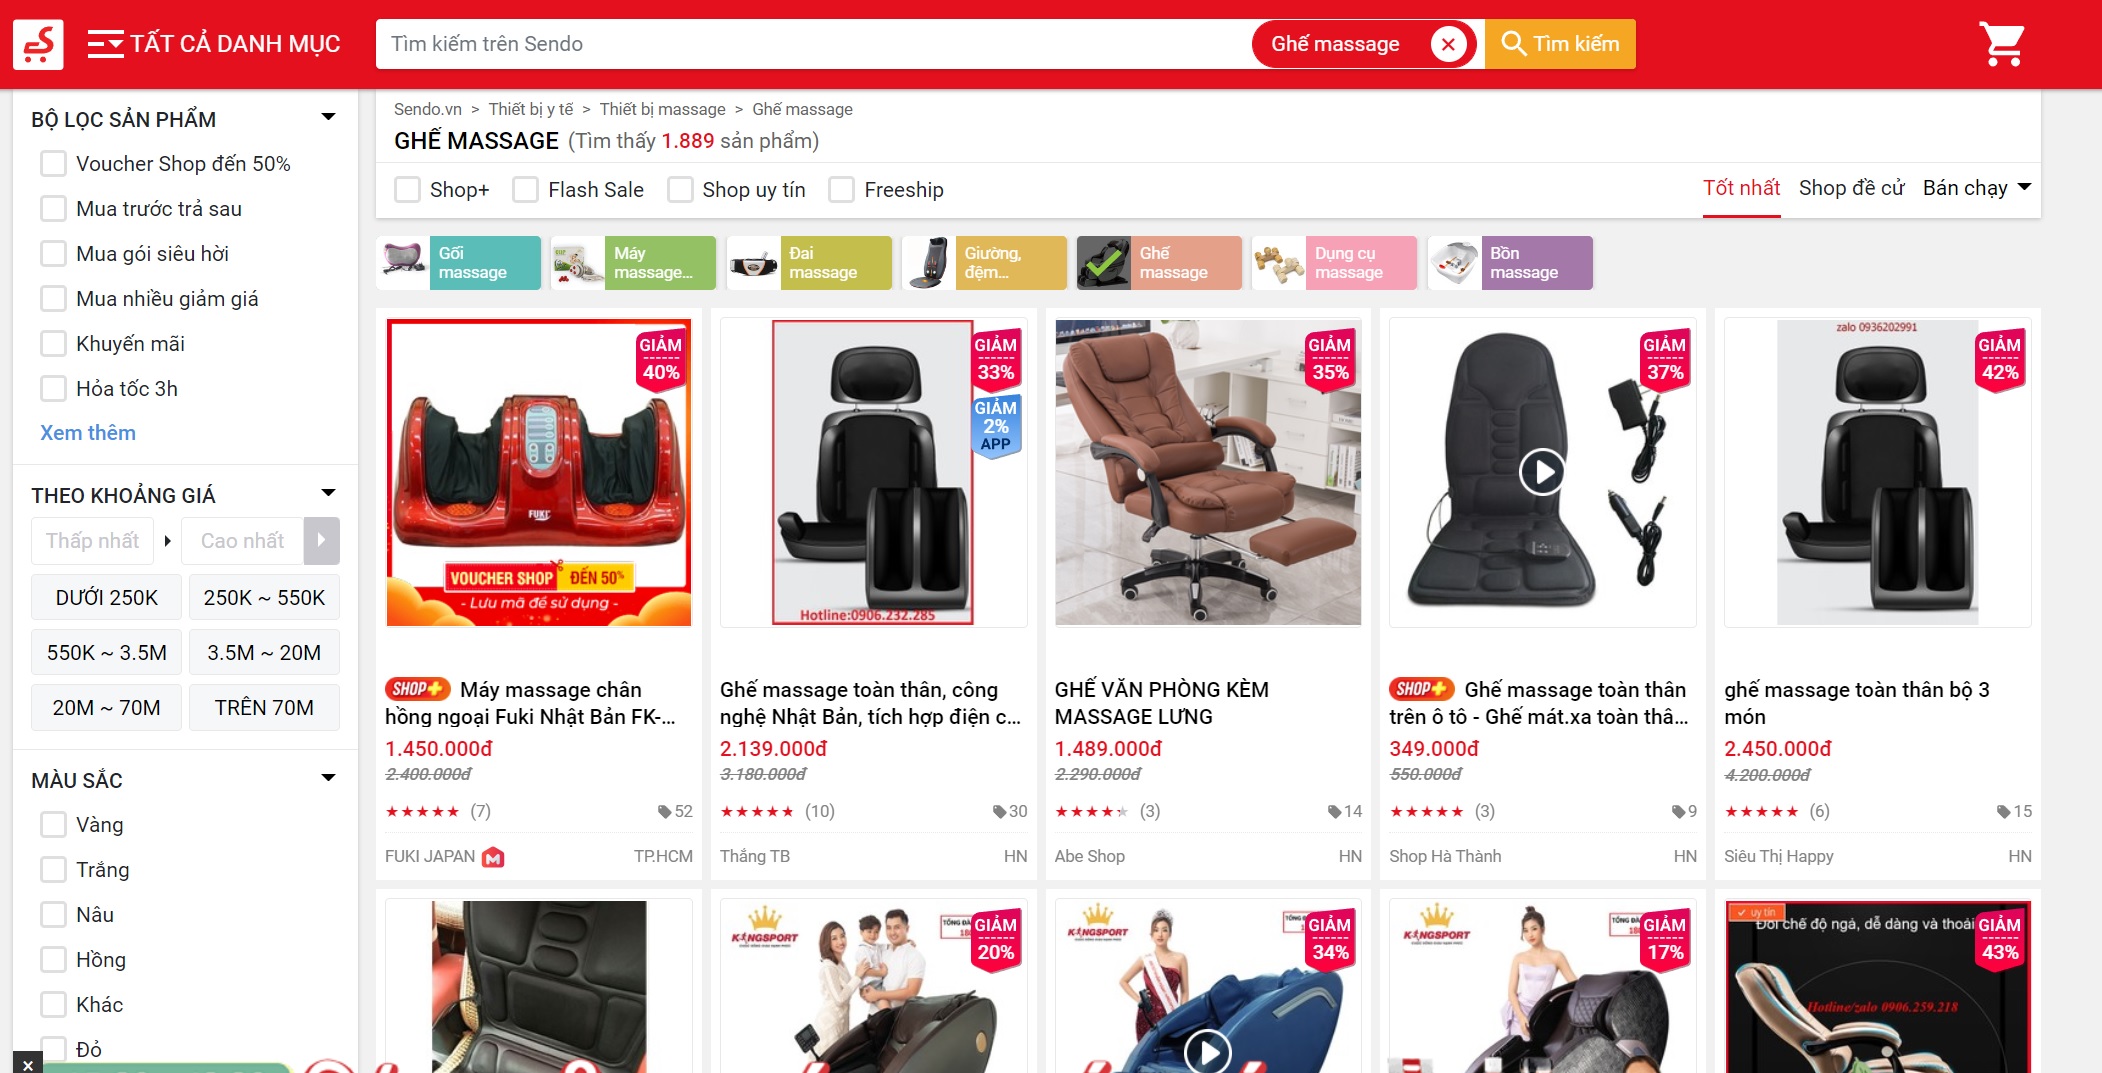 Trang thương mại điện tử Sendo cung cấp đa dạng những mẫu sản phẩm ghế massage để người dùng có thể tìm hiểu